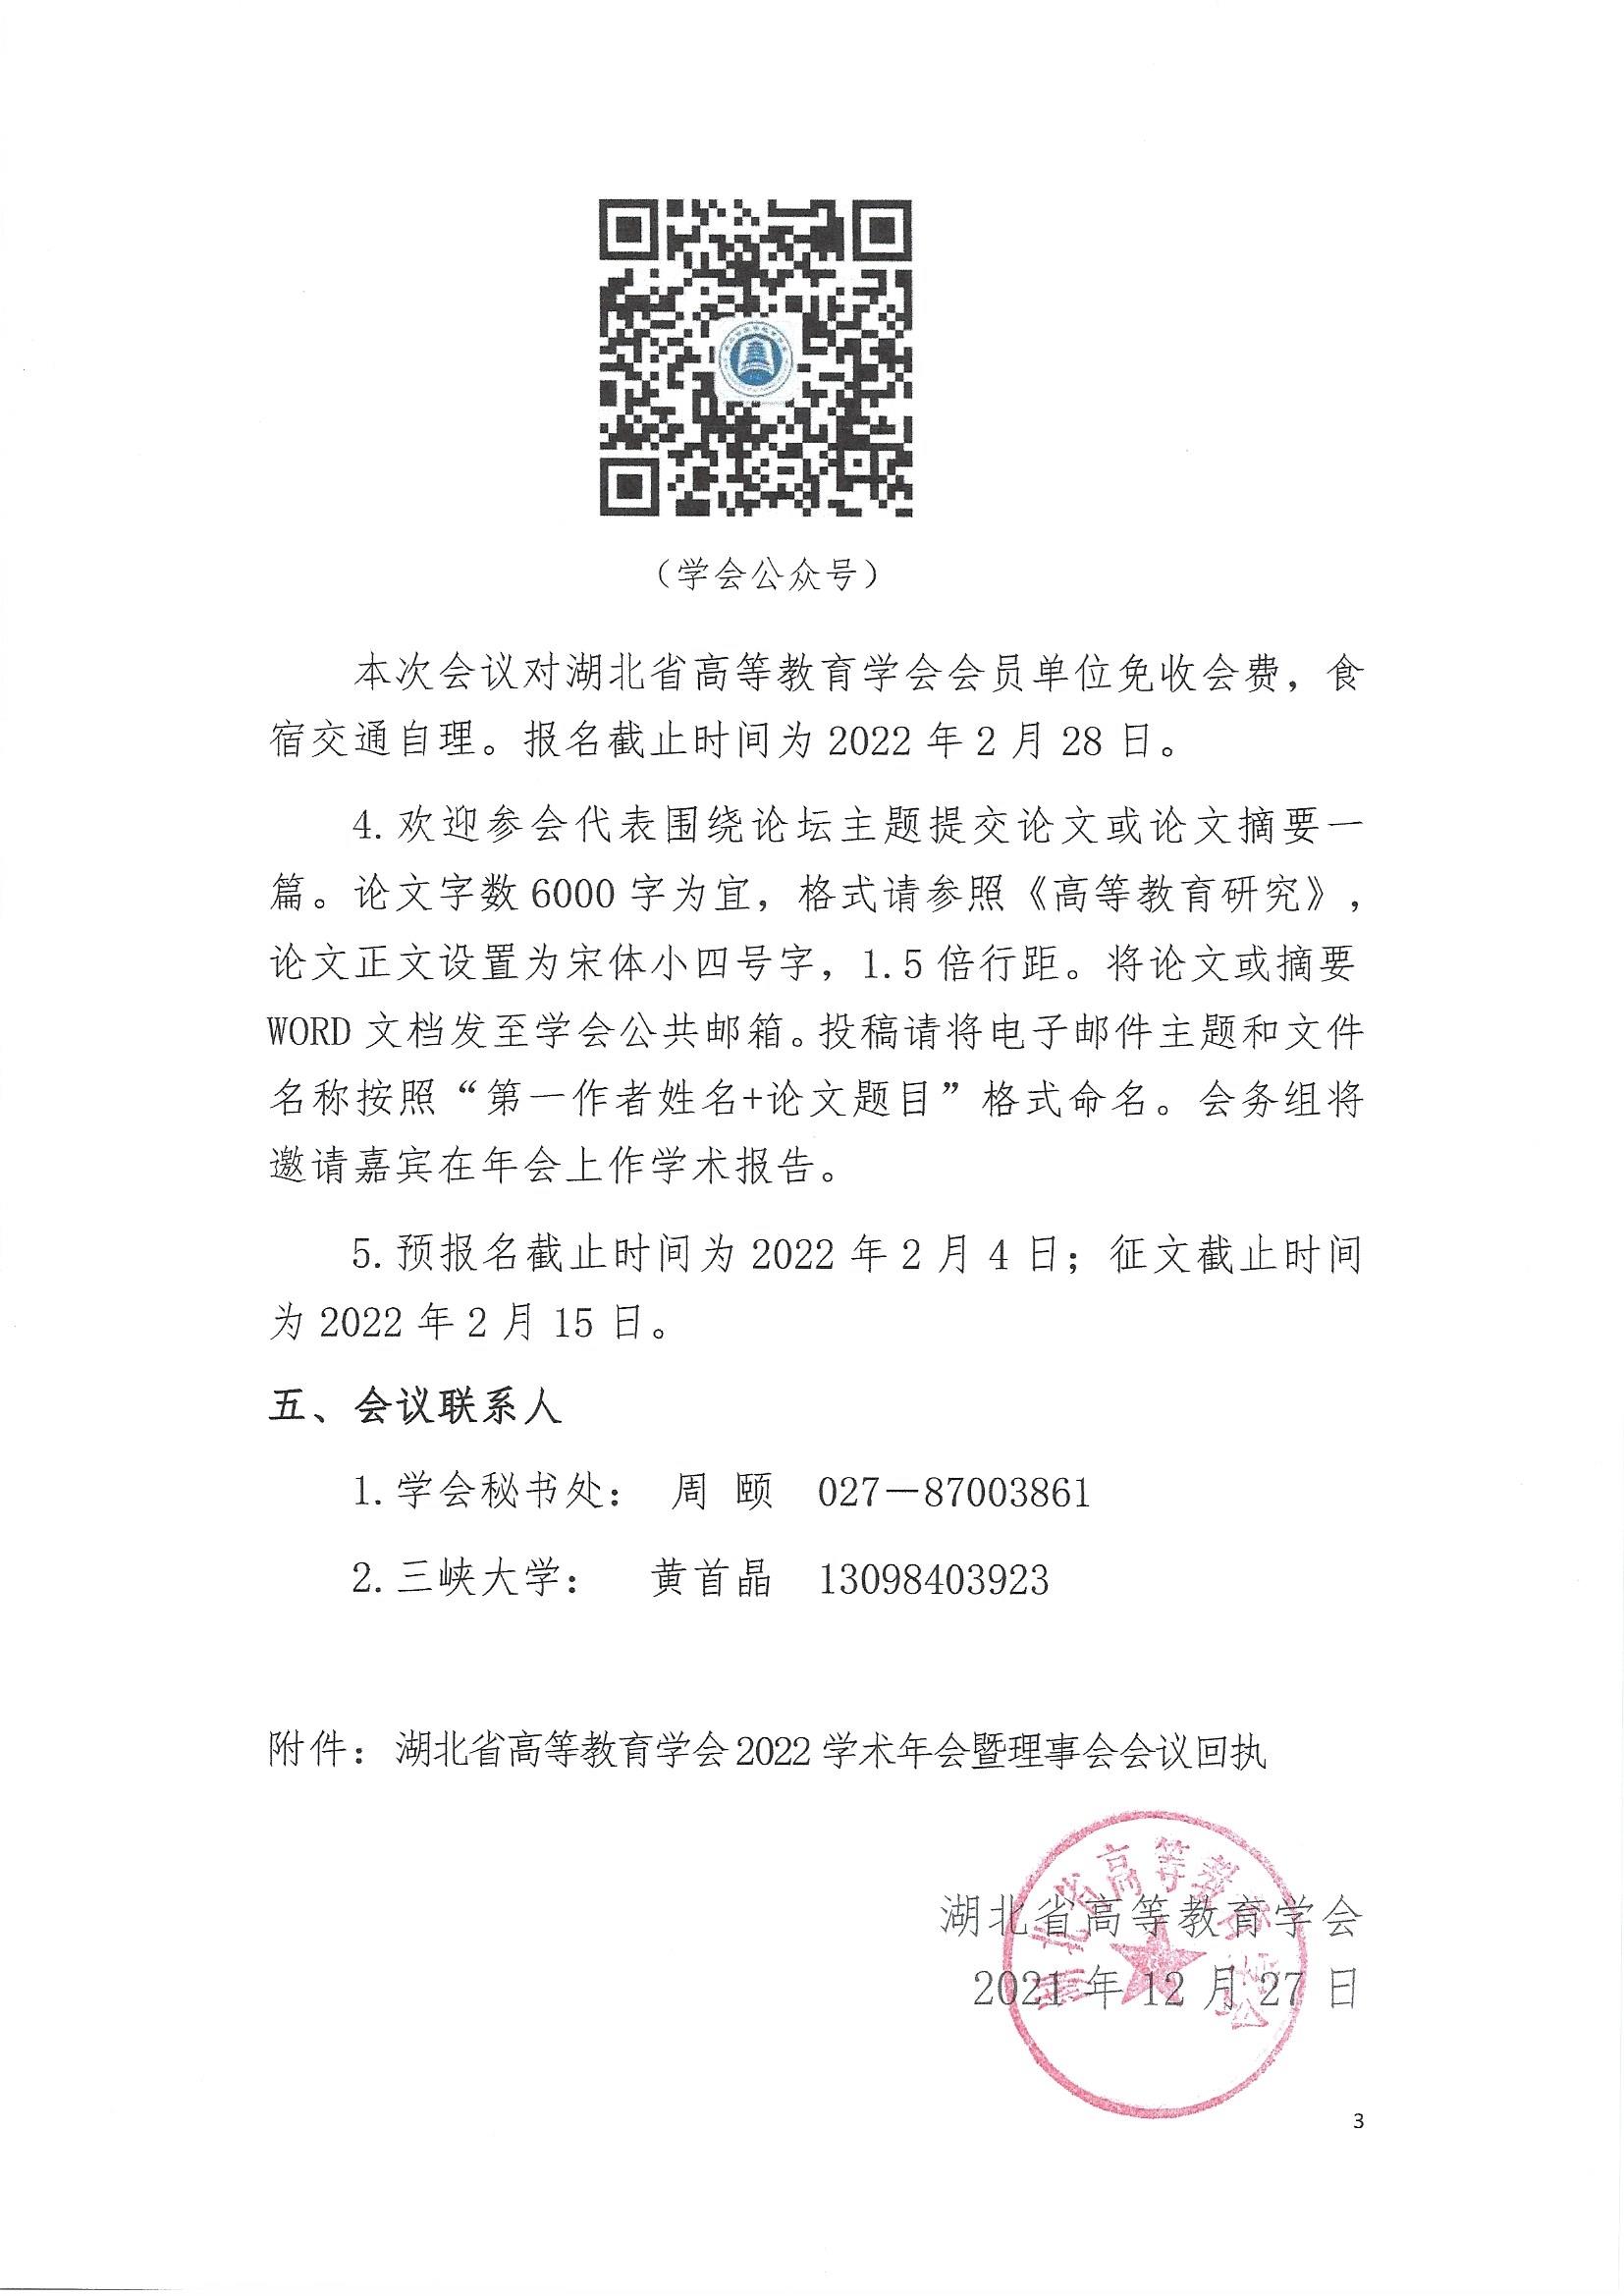 关于举办湖北省高等教育学会2022年学术年会暨理事会会议的预通知_页面_3.jpg